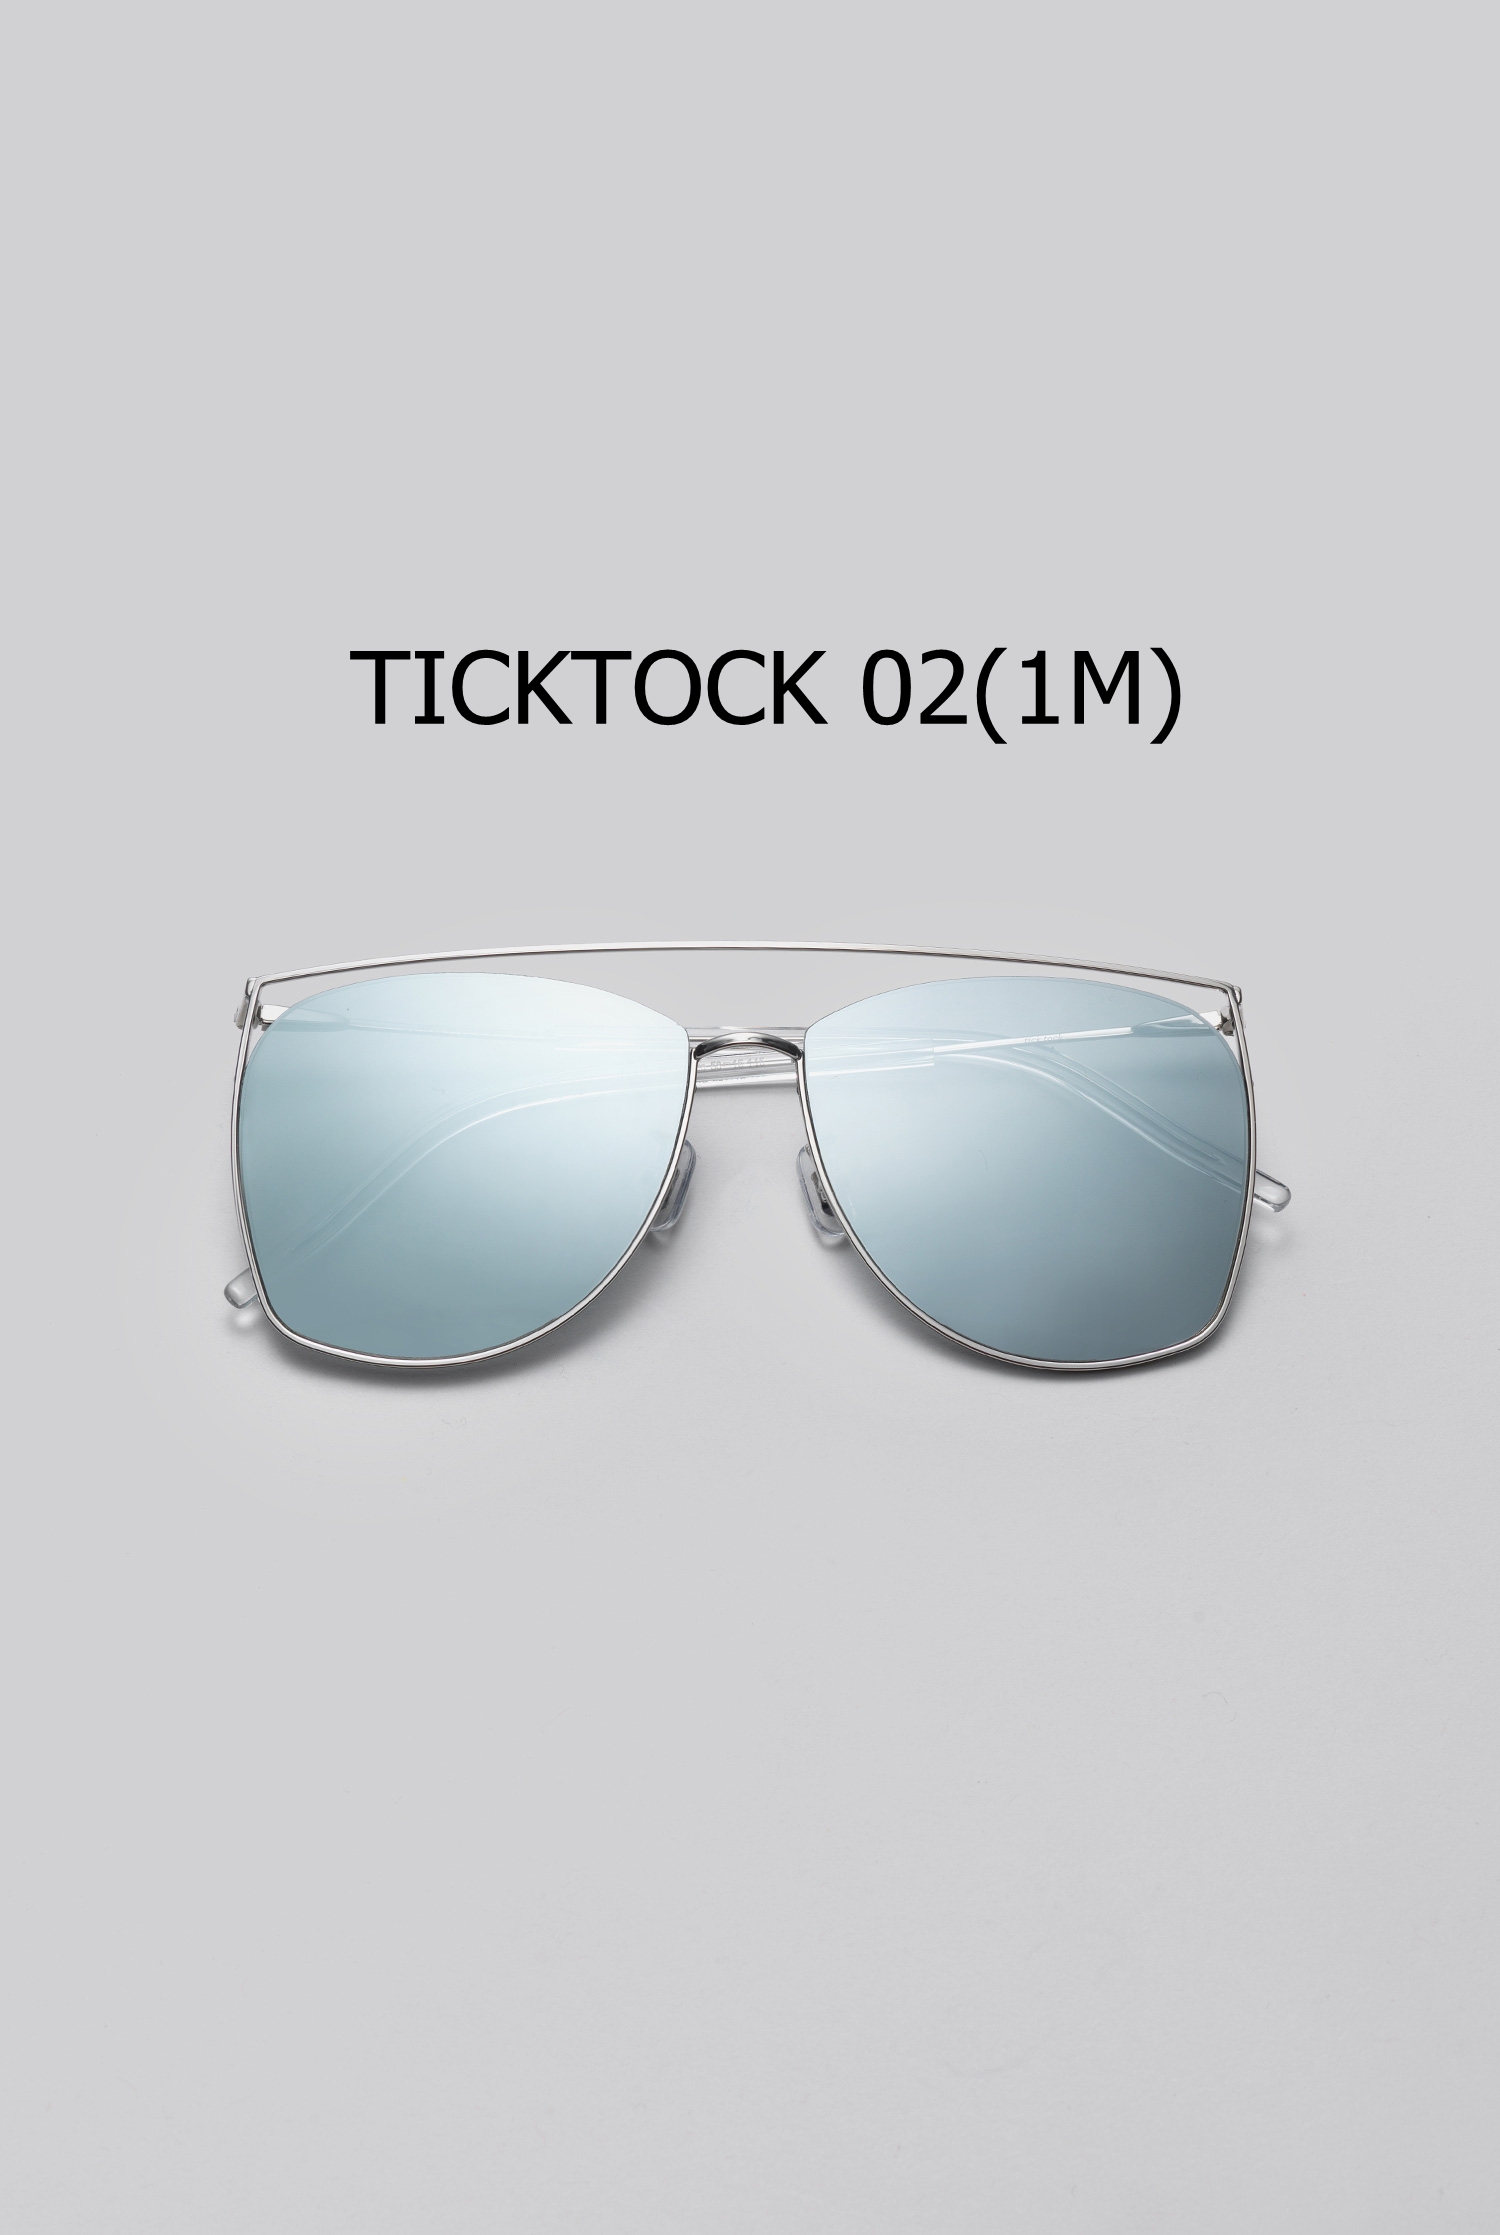 TICKTOCK 02(1M) 